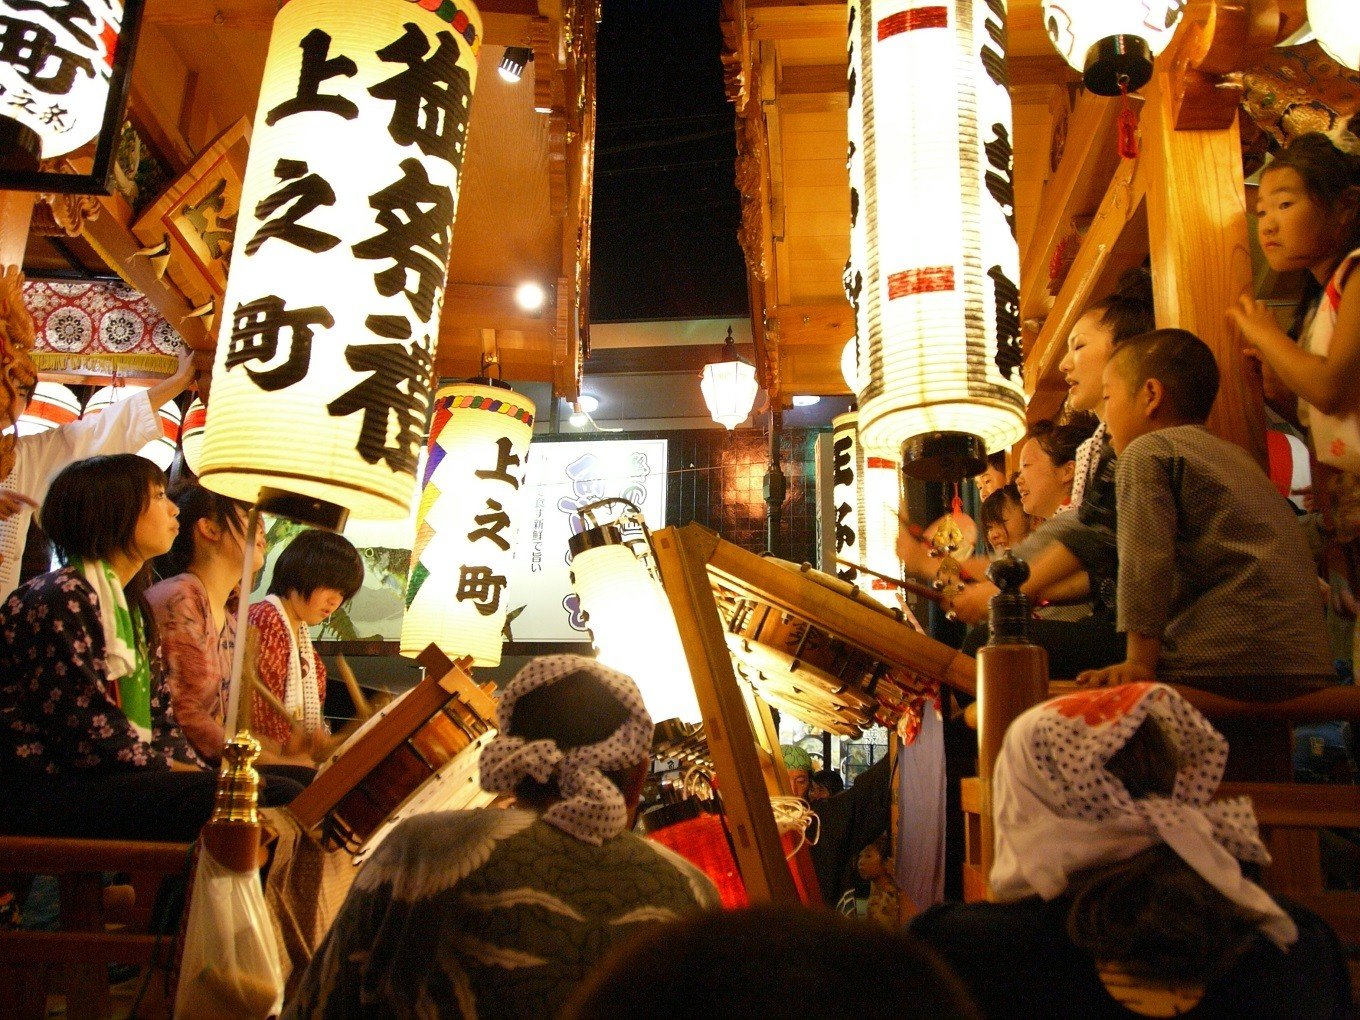 夏だ まつりだ 日本のお祭り イベントを楽しむ旅 ふるさと納税 ふるさとチョイス